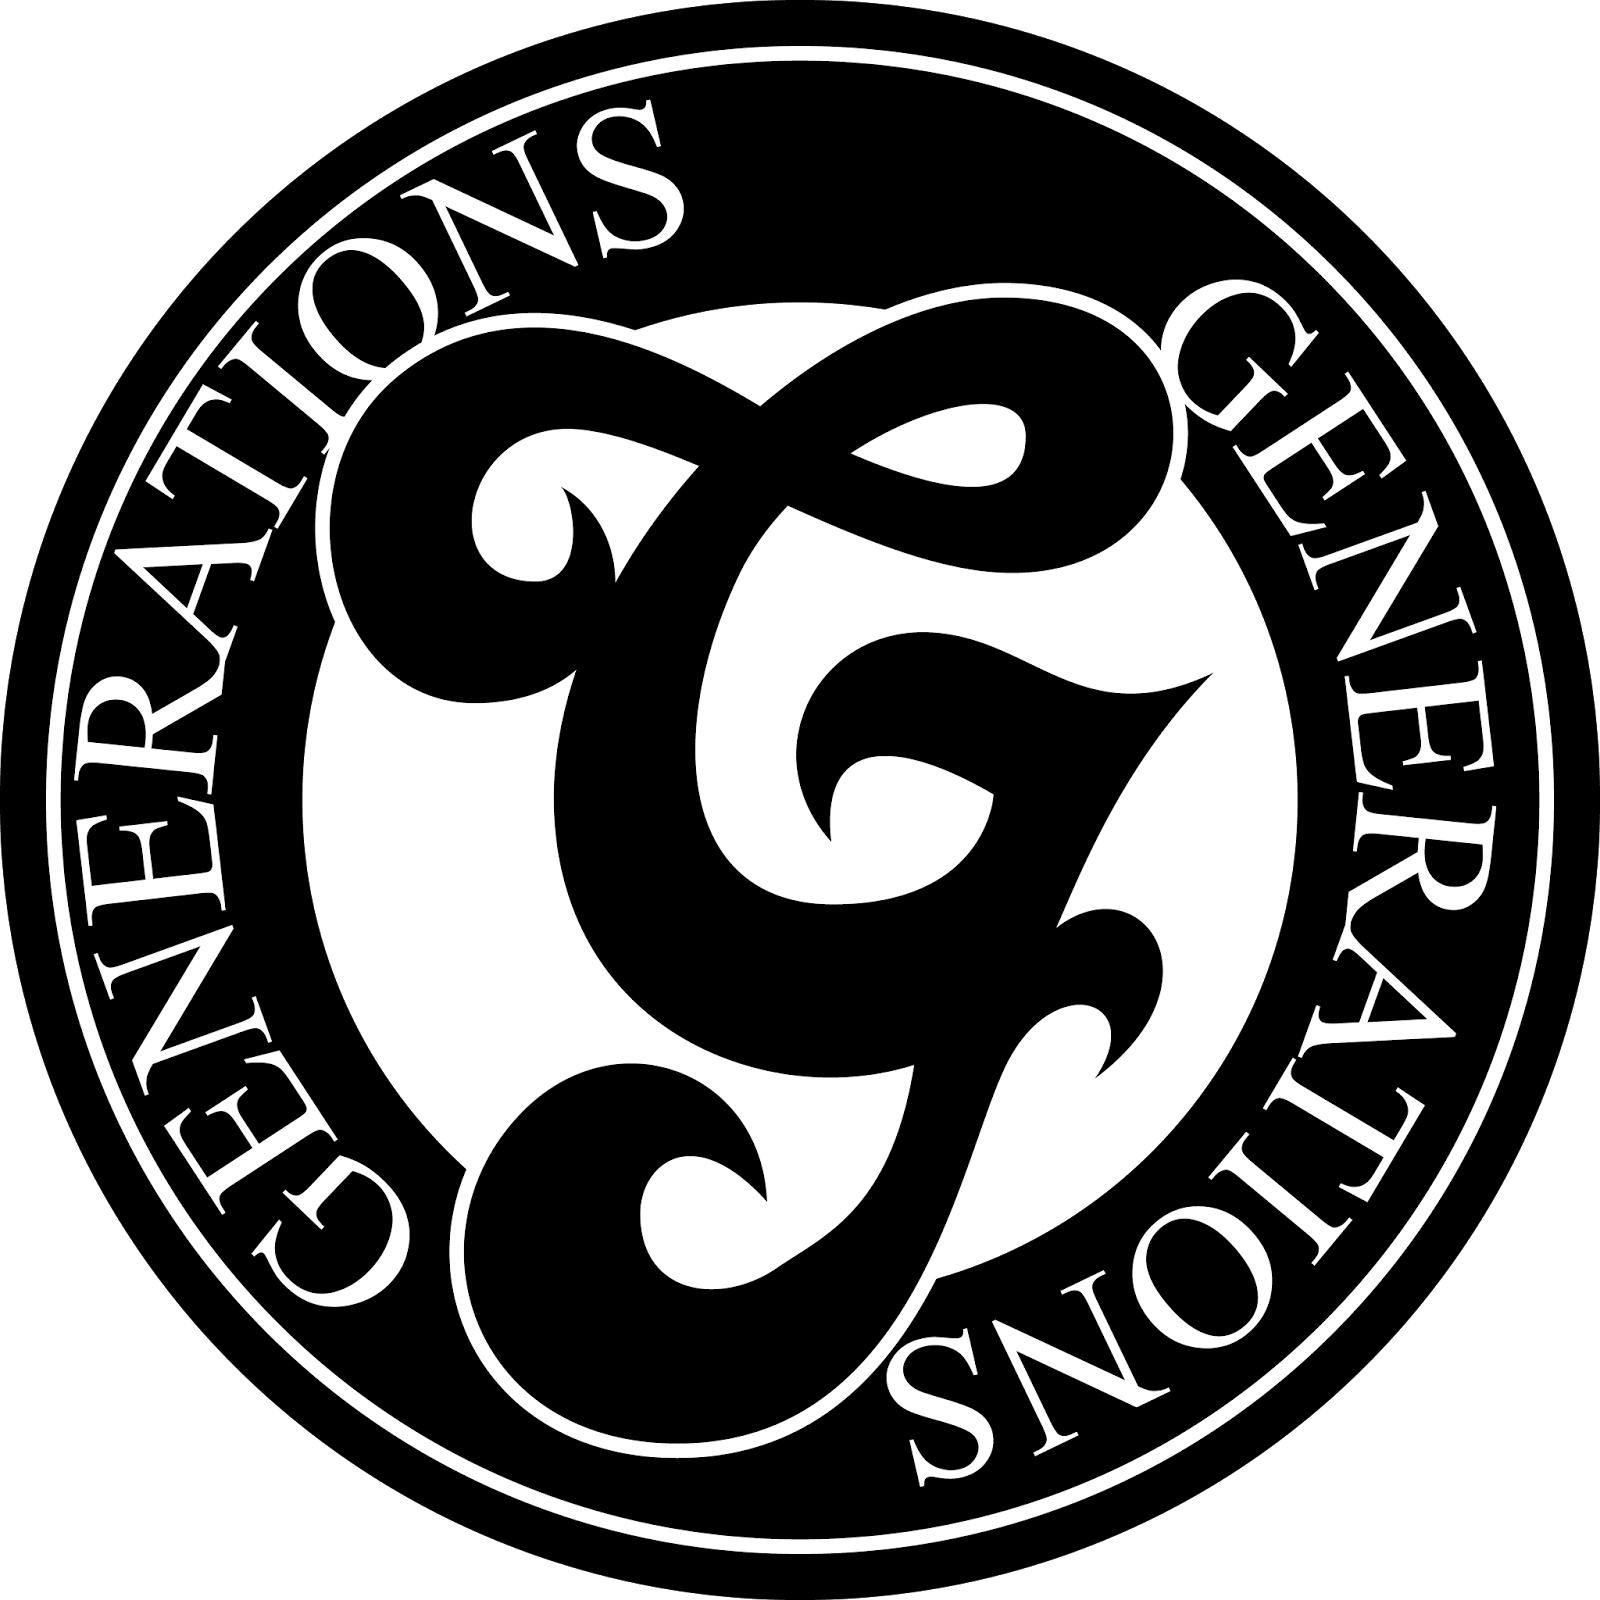 文字 Generations ロゴ Hoken Nays